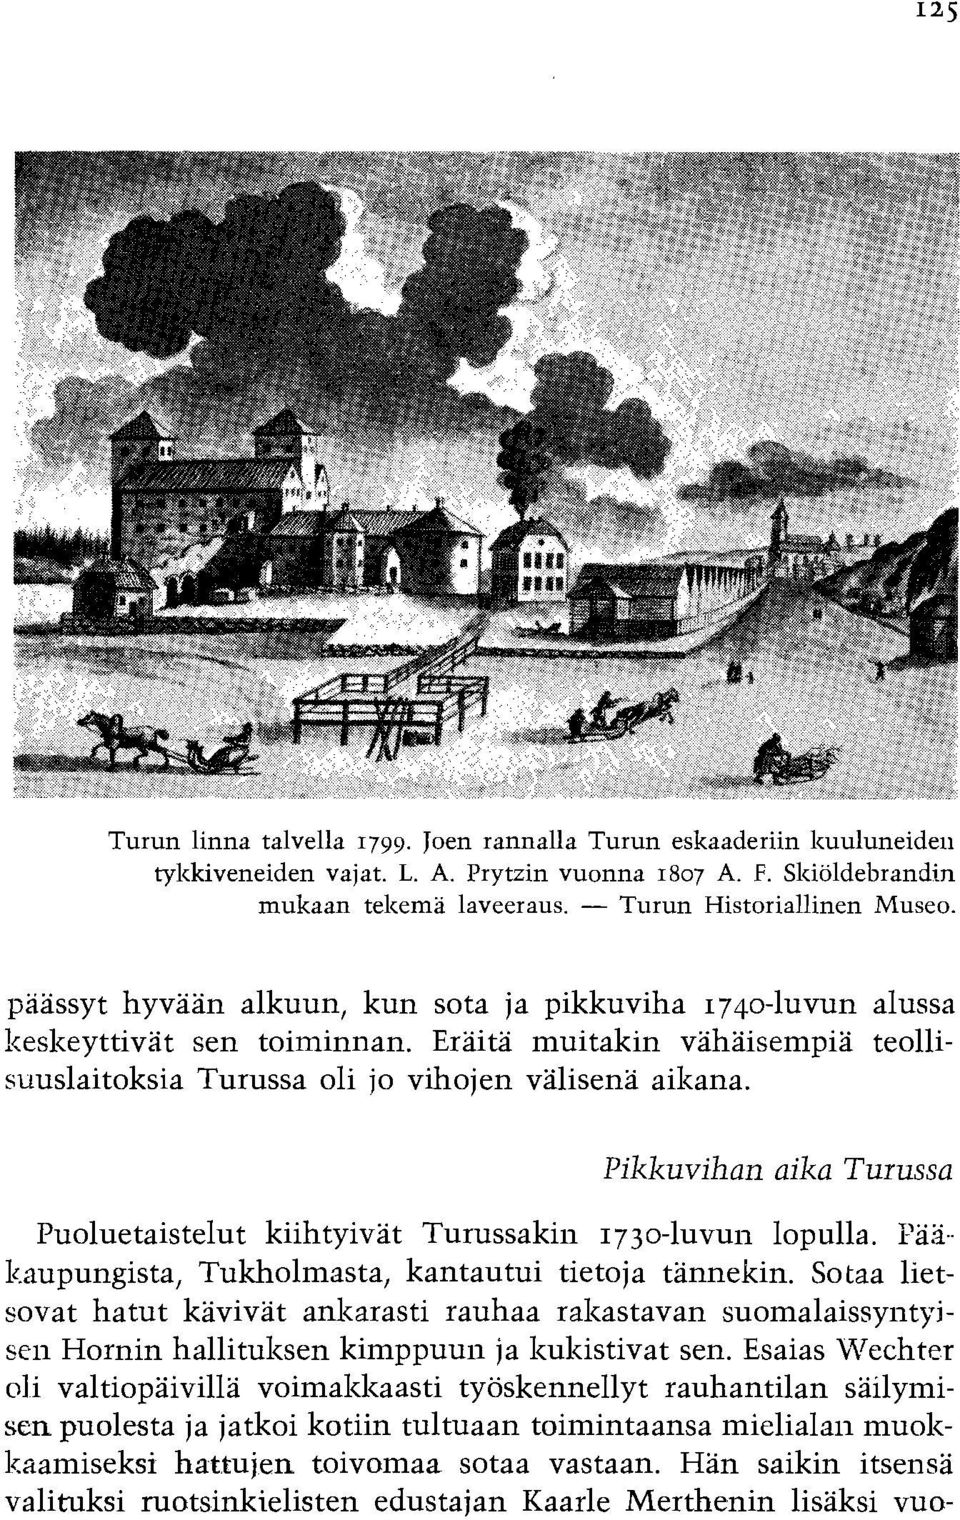 Pikkuvihan aika Turussa Puoluetaistelut kiihtyivat Turussakin 1730-luvun lopulla. Pa3- l.aupungista, Tukholmasta, kantautui tietoja tannekin.